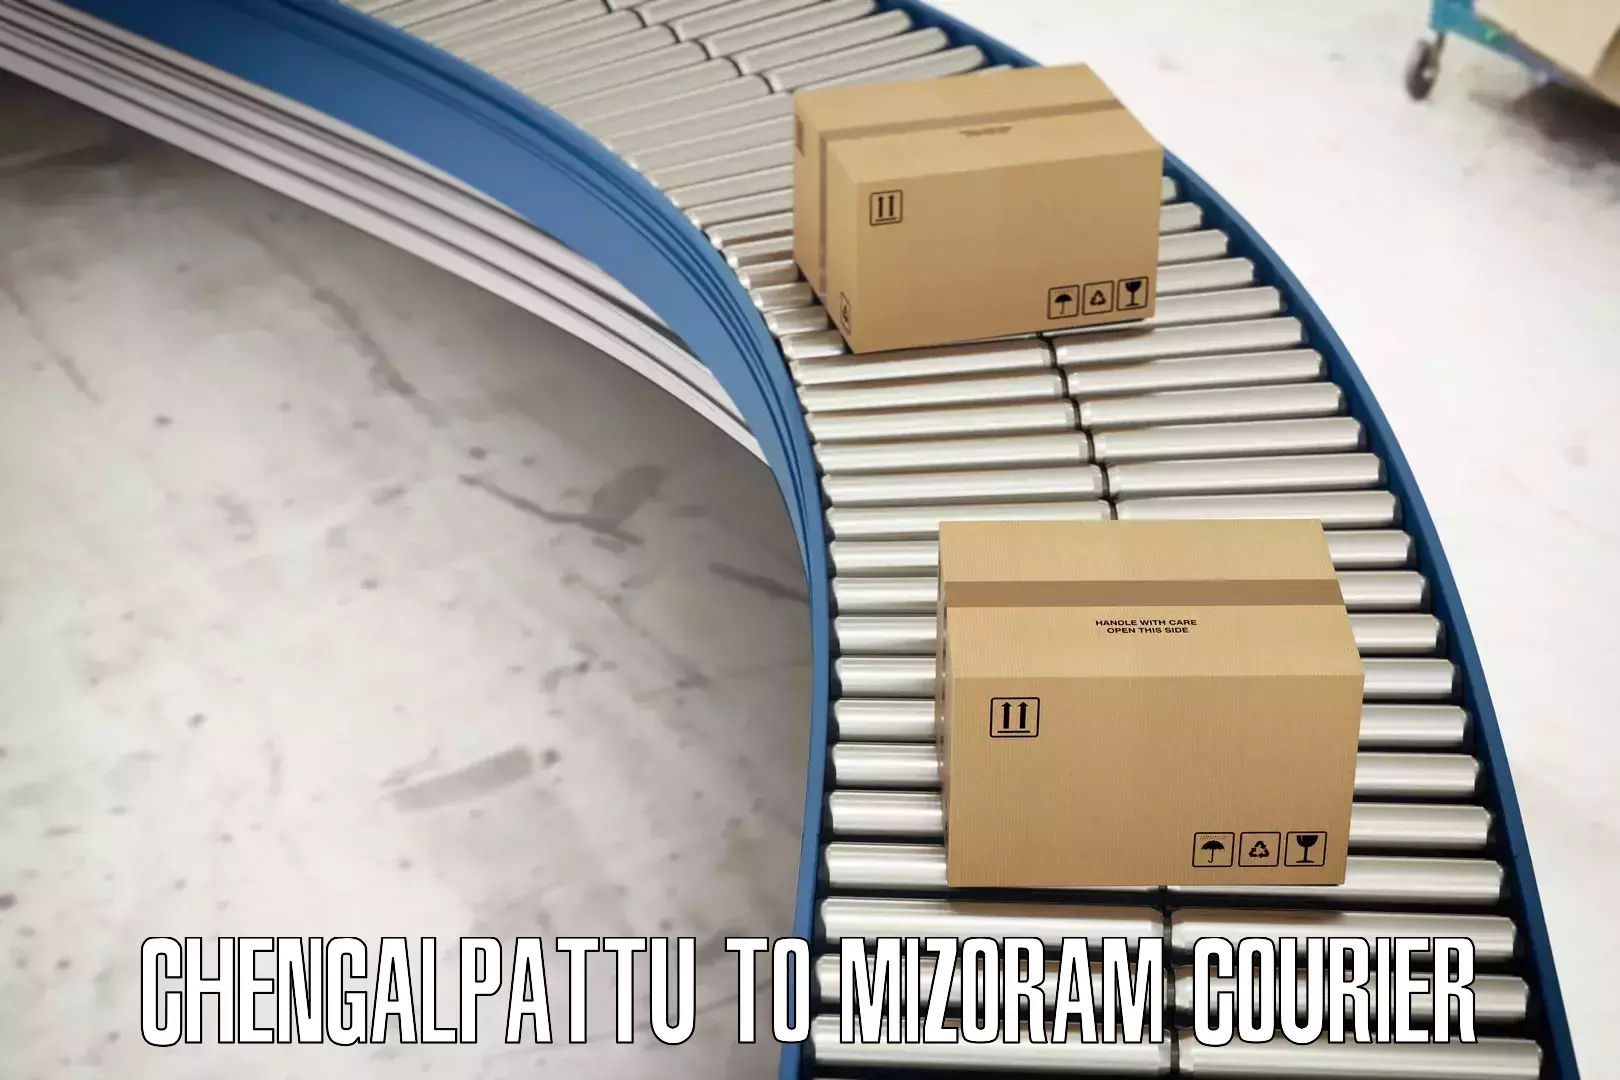 Premium courier solutions Chengalpattu to Mamit